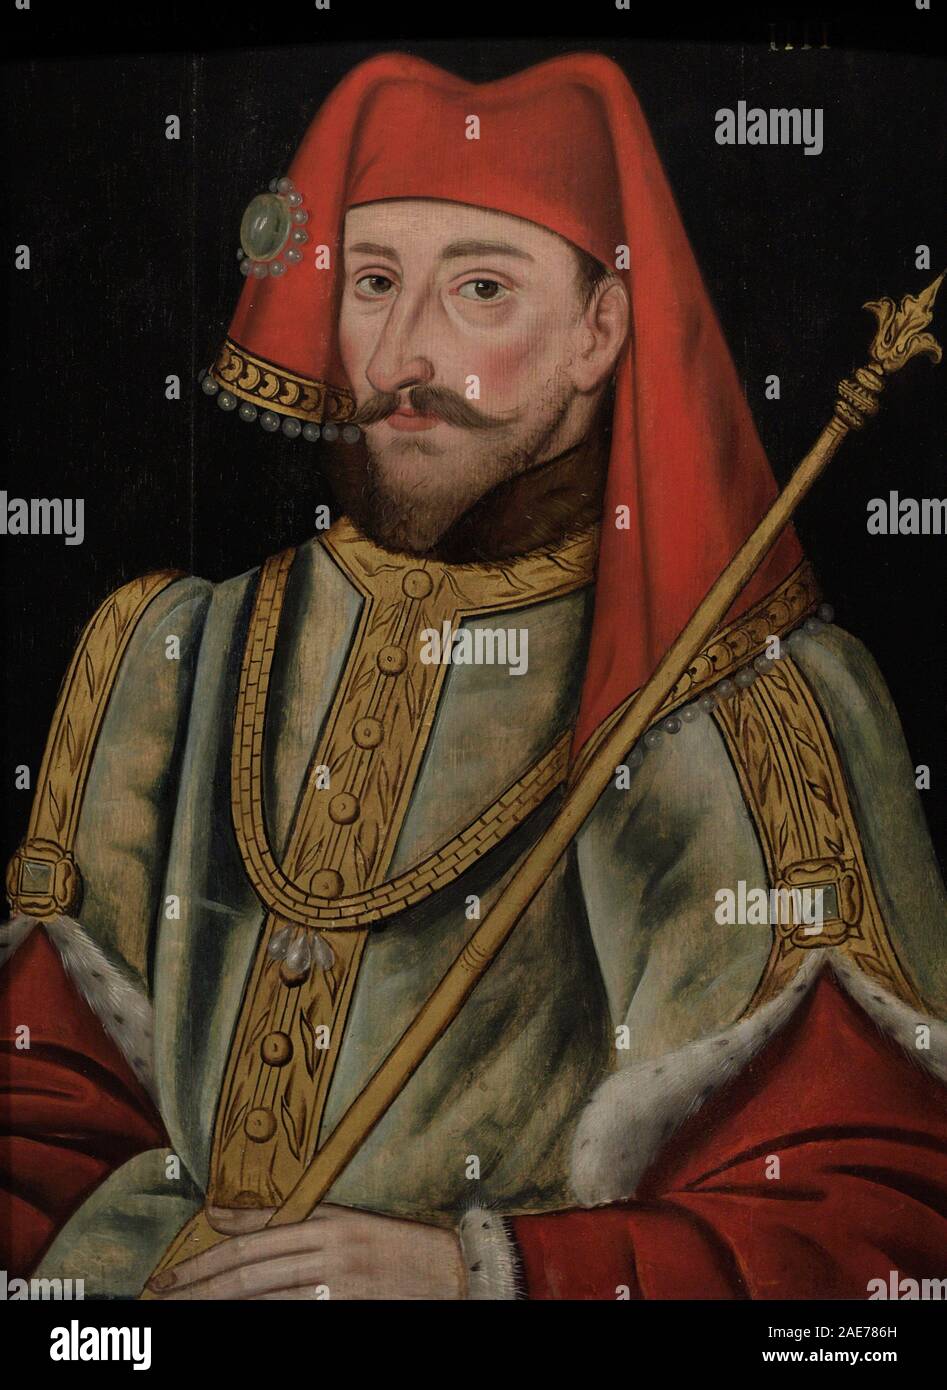 Enrique IV de Inglaterra (1367-1413). Rey de Inglaterra entre 1399 y 1413. Casa real de Lancaster. Autor no identificado. Oleo sobre lienzo, 1597-1618. National Portrait Gallery. Londres. Inglaterra. Stock Photo